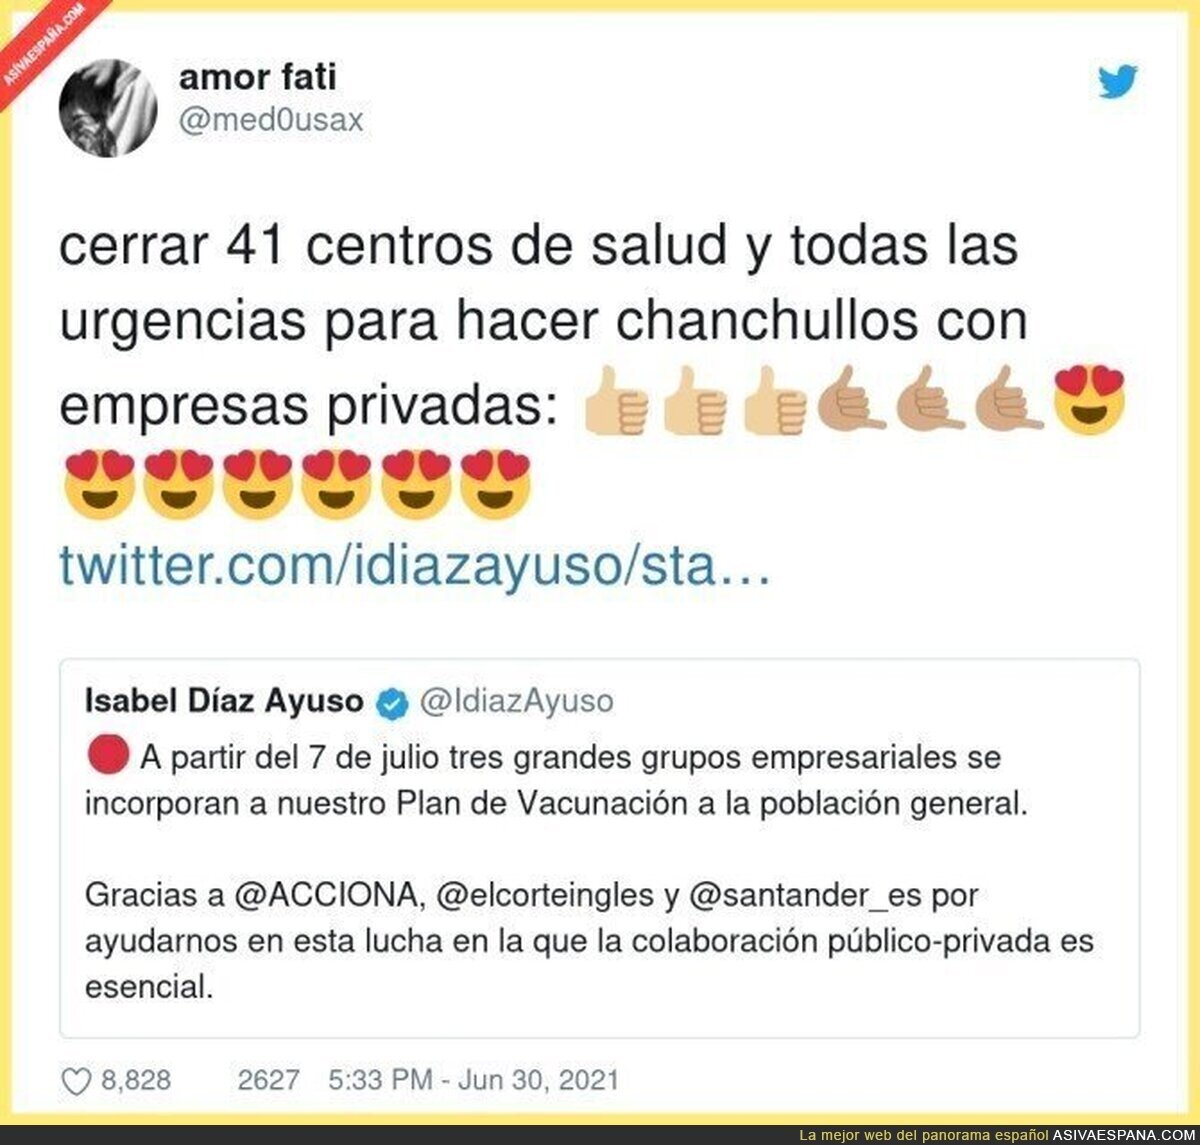 ¡Viva Isabel Díaz Ayuso!